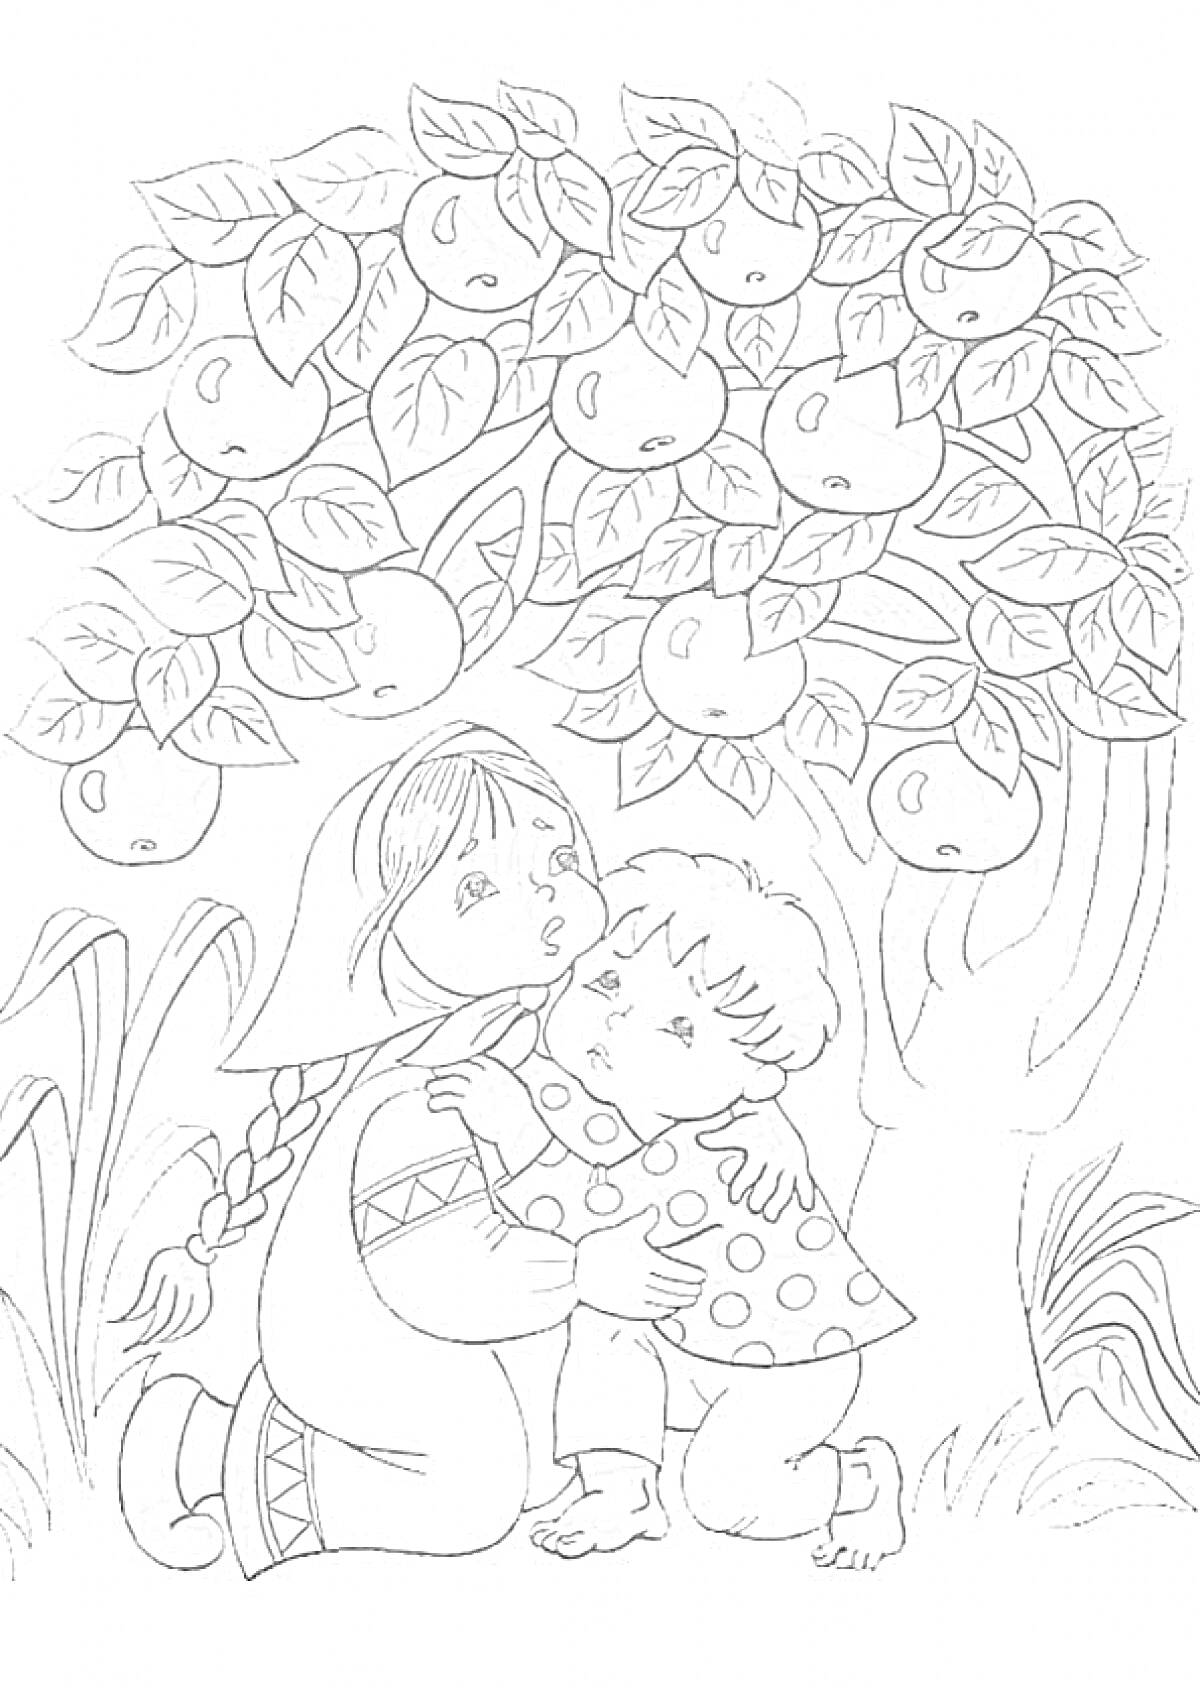 Девочка с косой и мальчик под яблоней